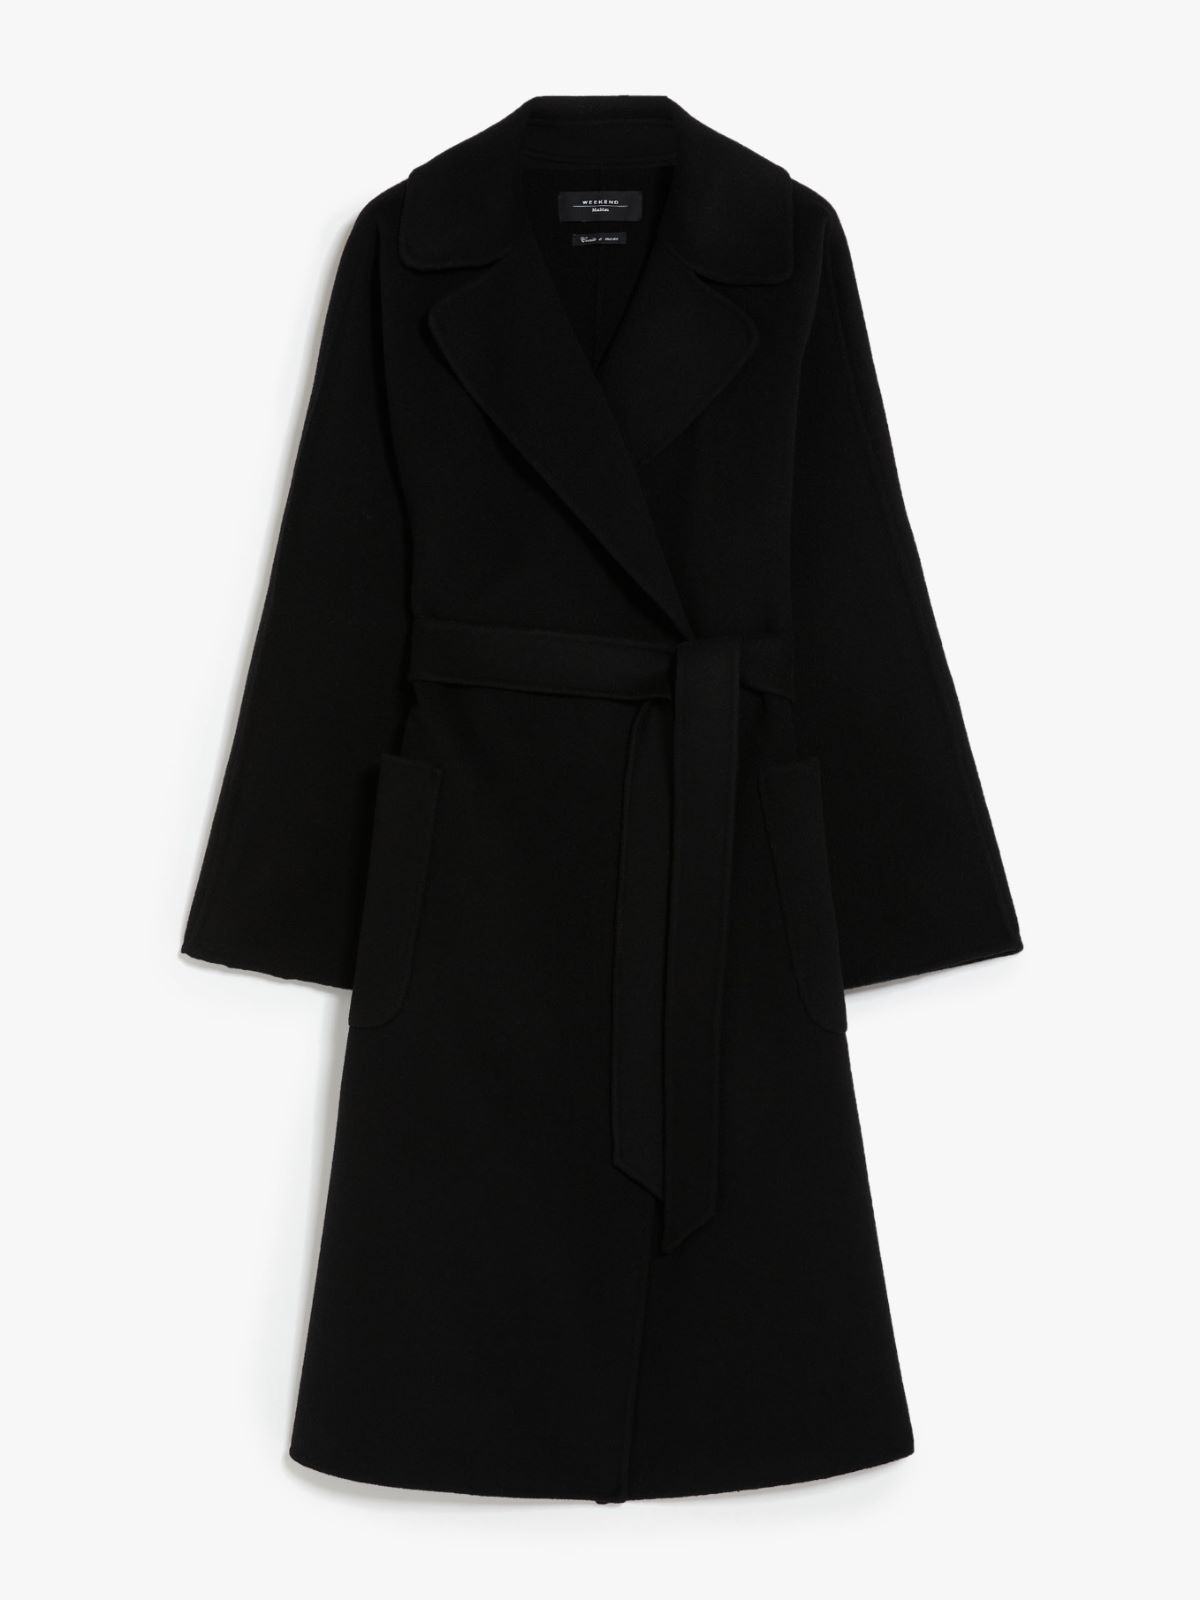 Wrap coat in wool, black | Weekend Max Mara